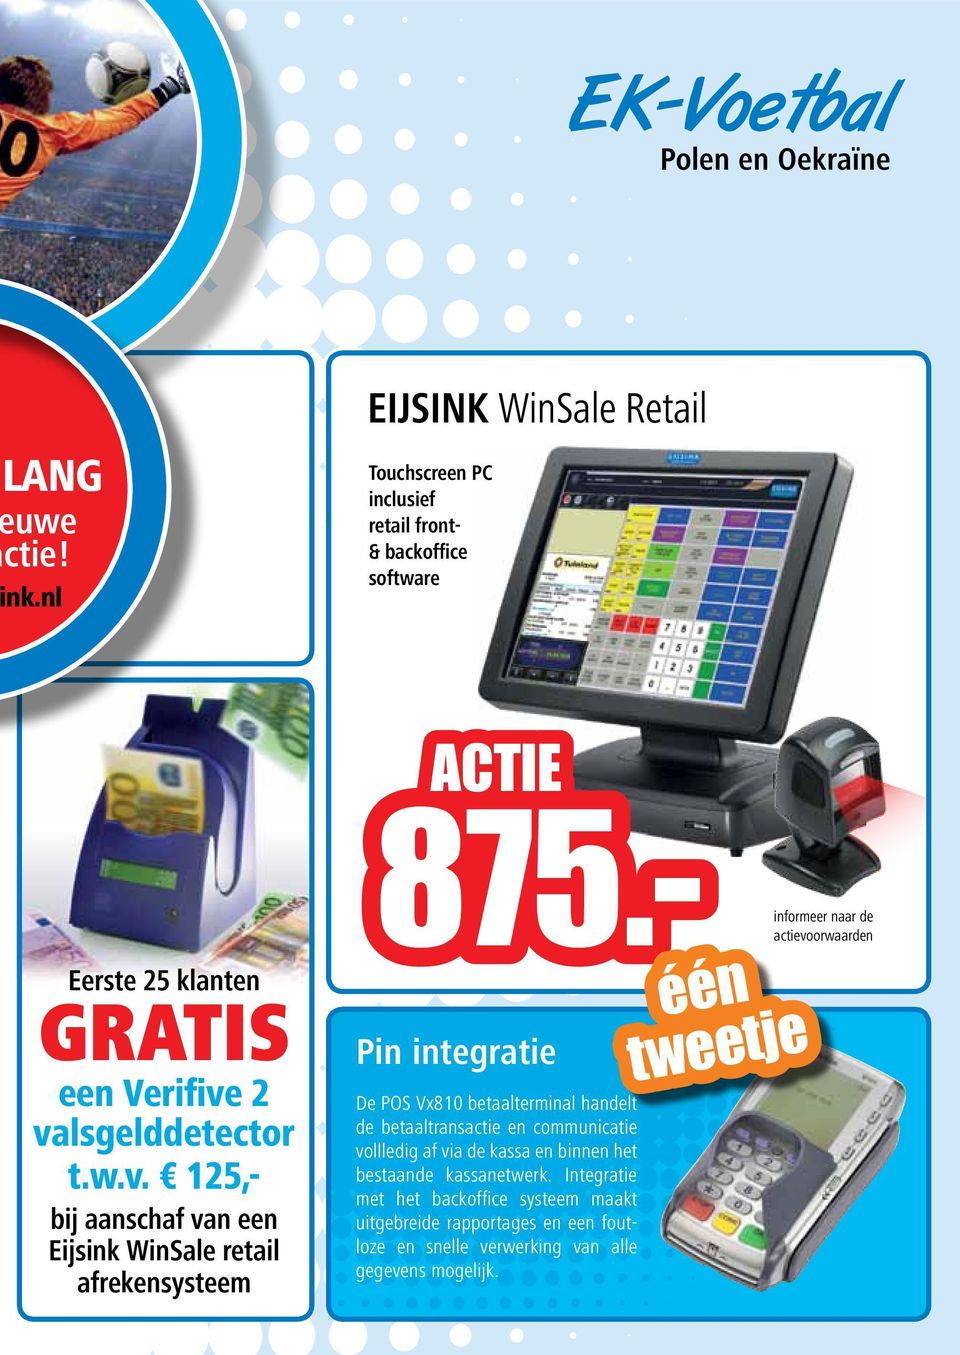 2 valsgelddetector t.w.v. 125,- bij aanschaf van een Eijsink WinSale retail afrekensysteem ACTIE 875.